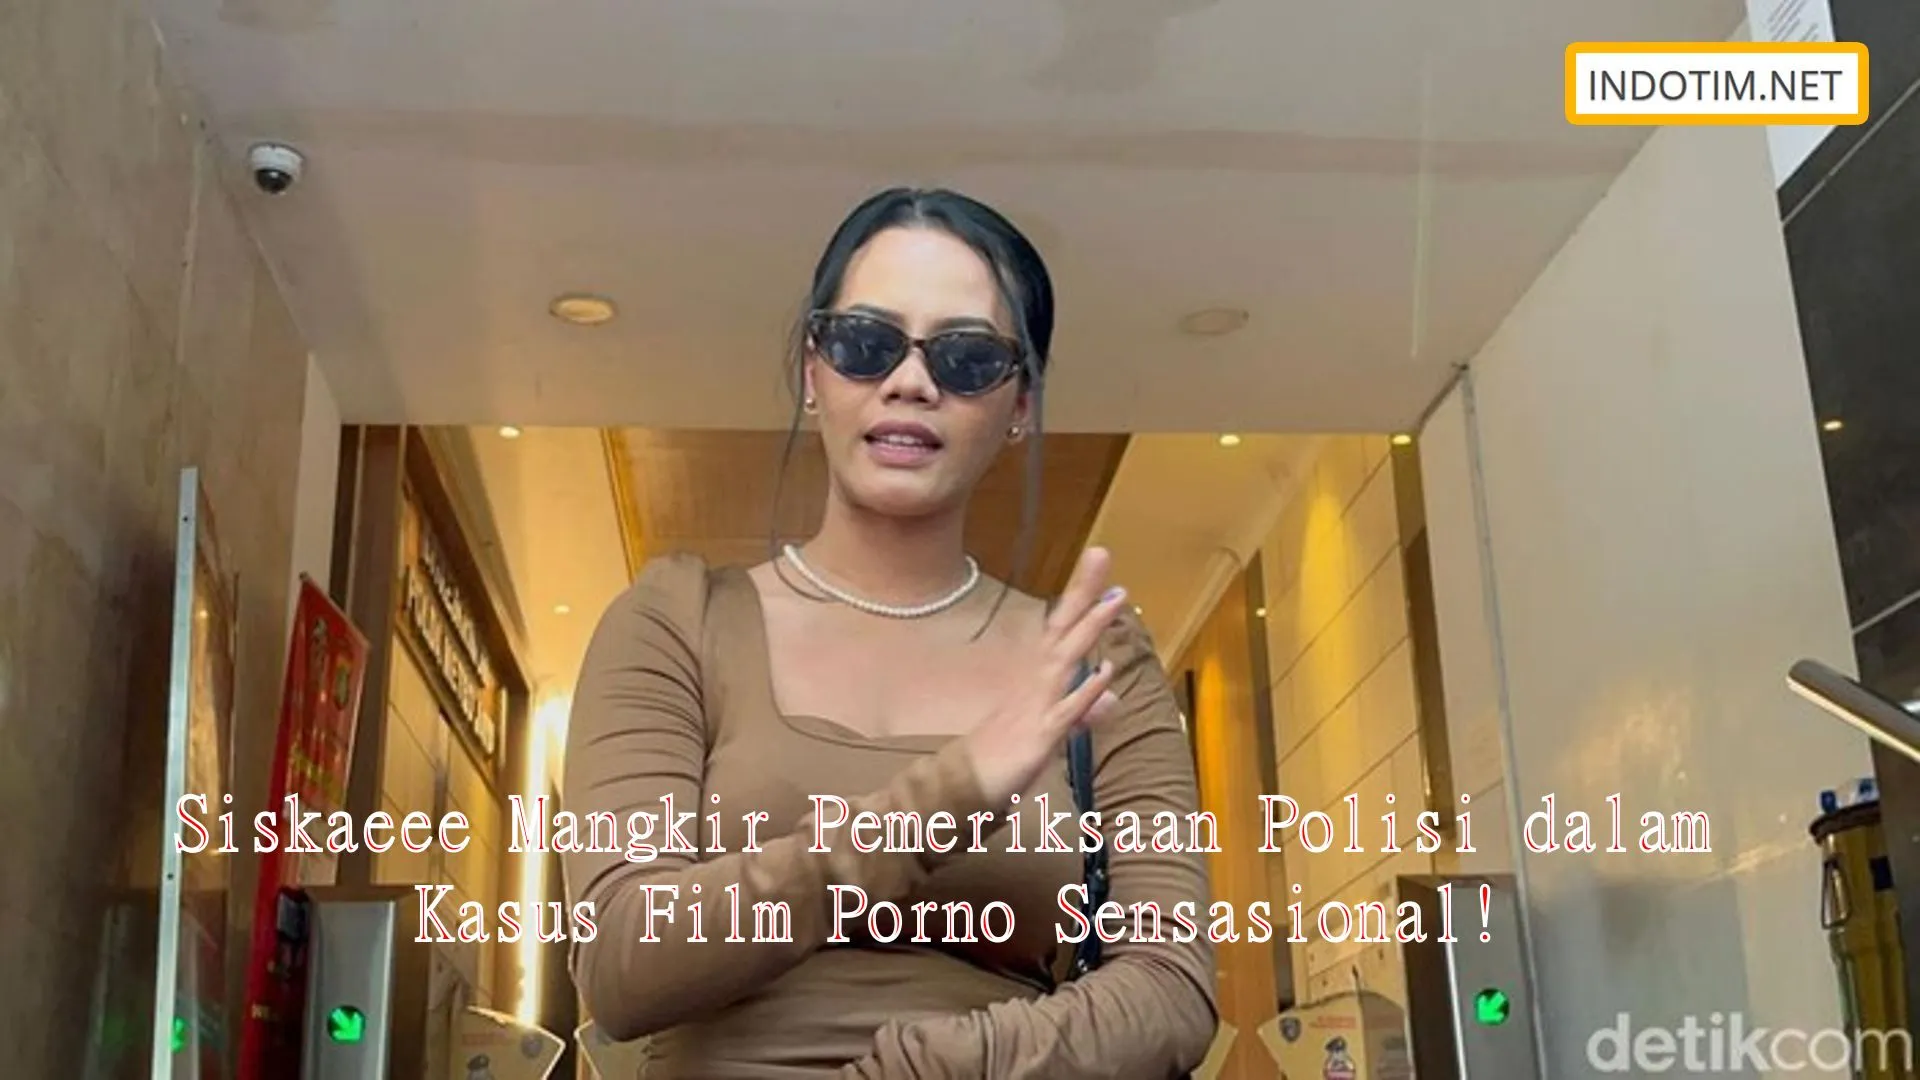 Siskaeee Mangkir Pemeriksaan Polisi dalam Kasus Film Porno Sensasional!